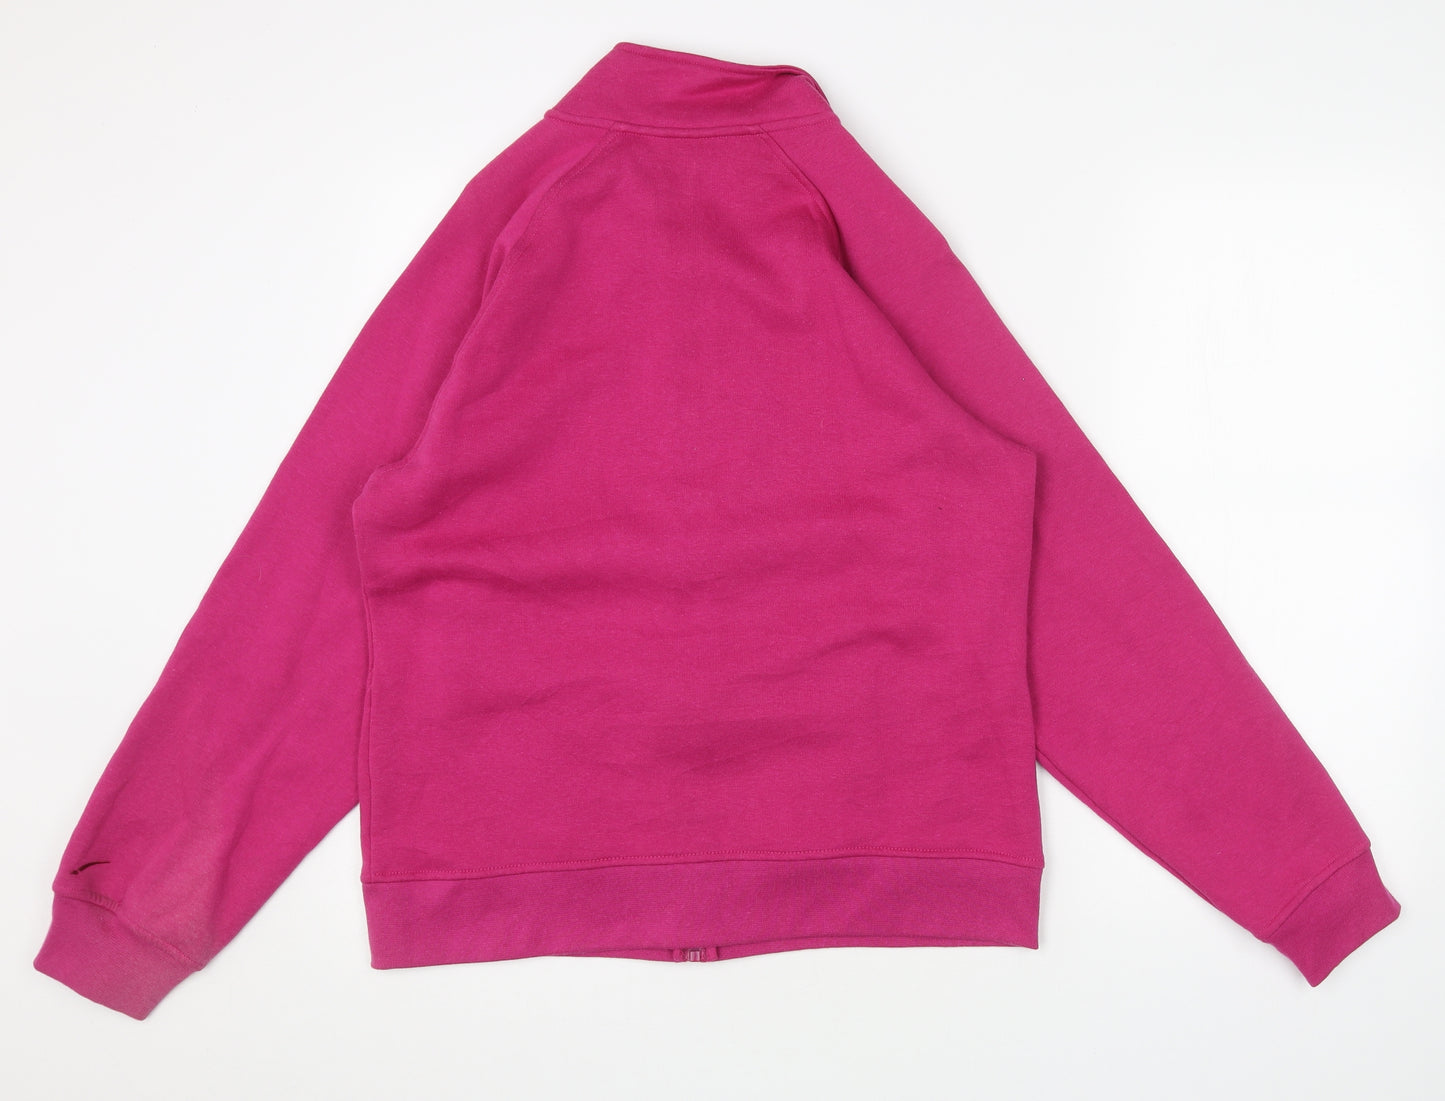 LA Gear Womens Pink Jacket Size 14 Zip